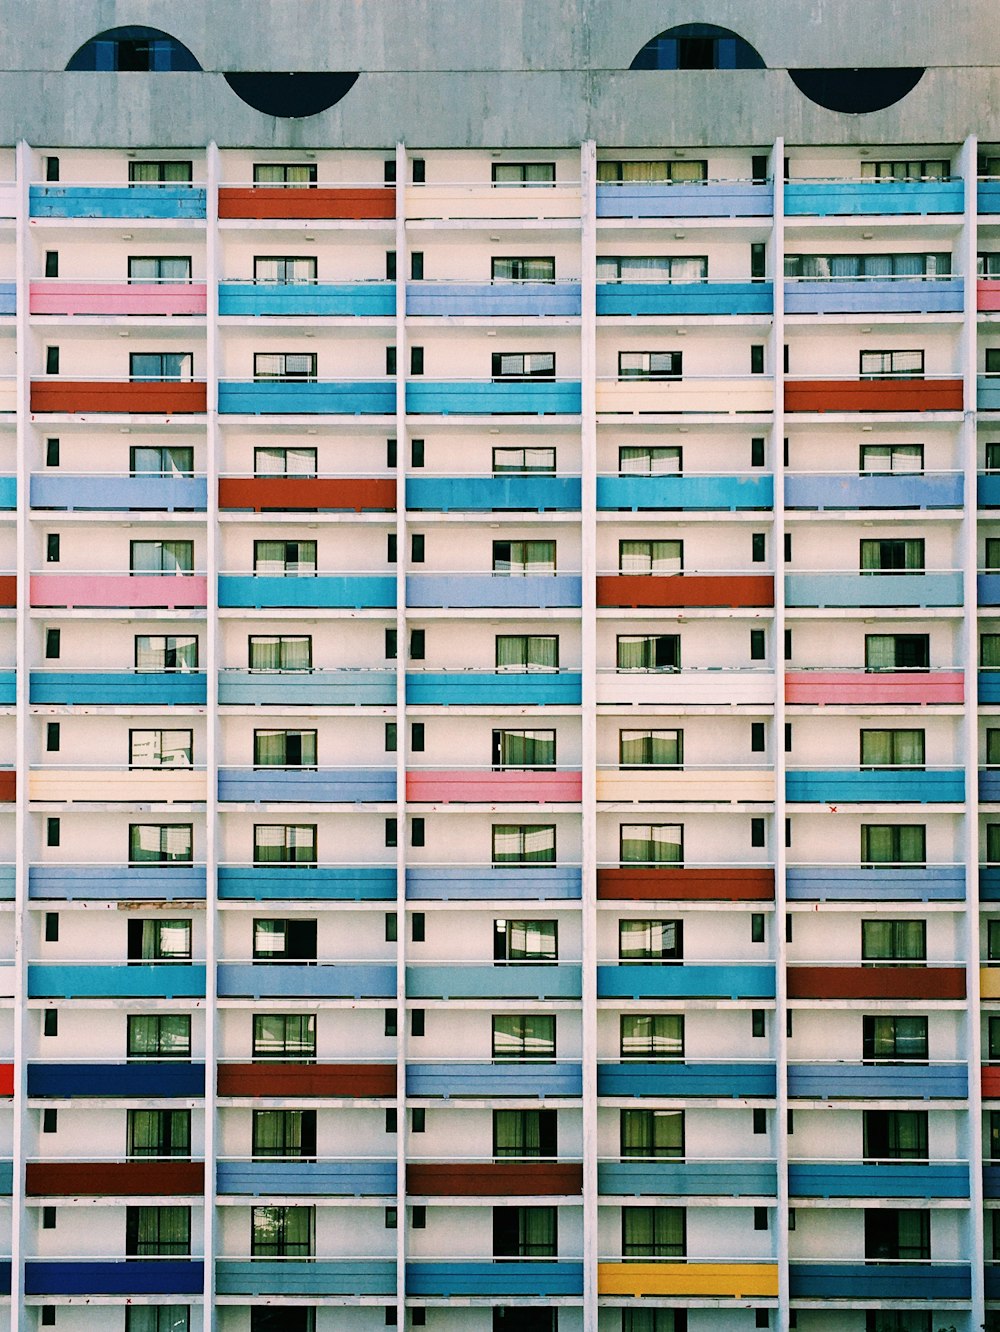 창문과 발코니가 있는 여러 가지 빛깔의 건물